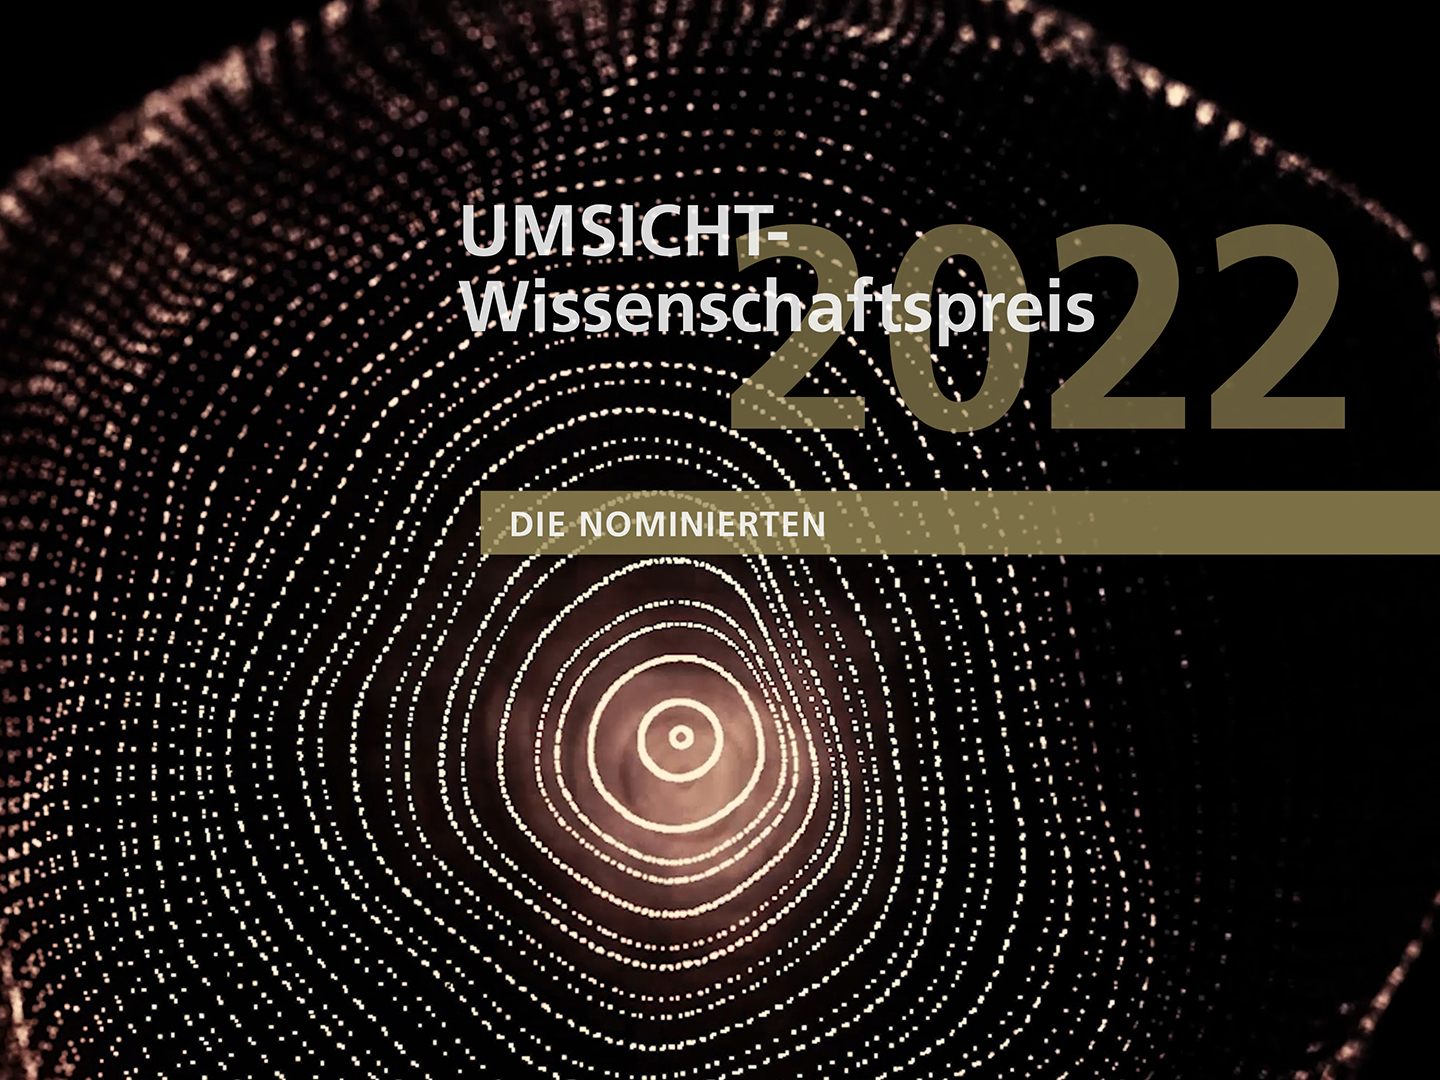 UMSICHT-Wissenschaftspreis 2022.